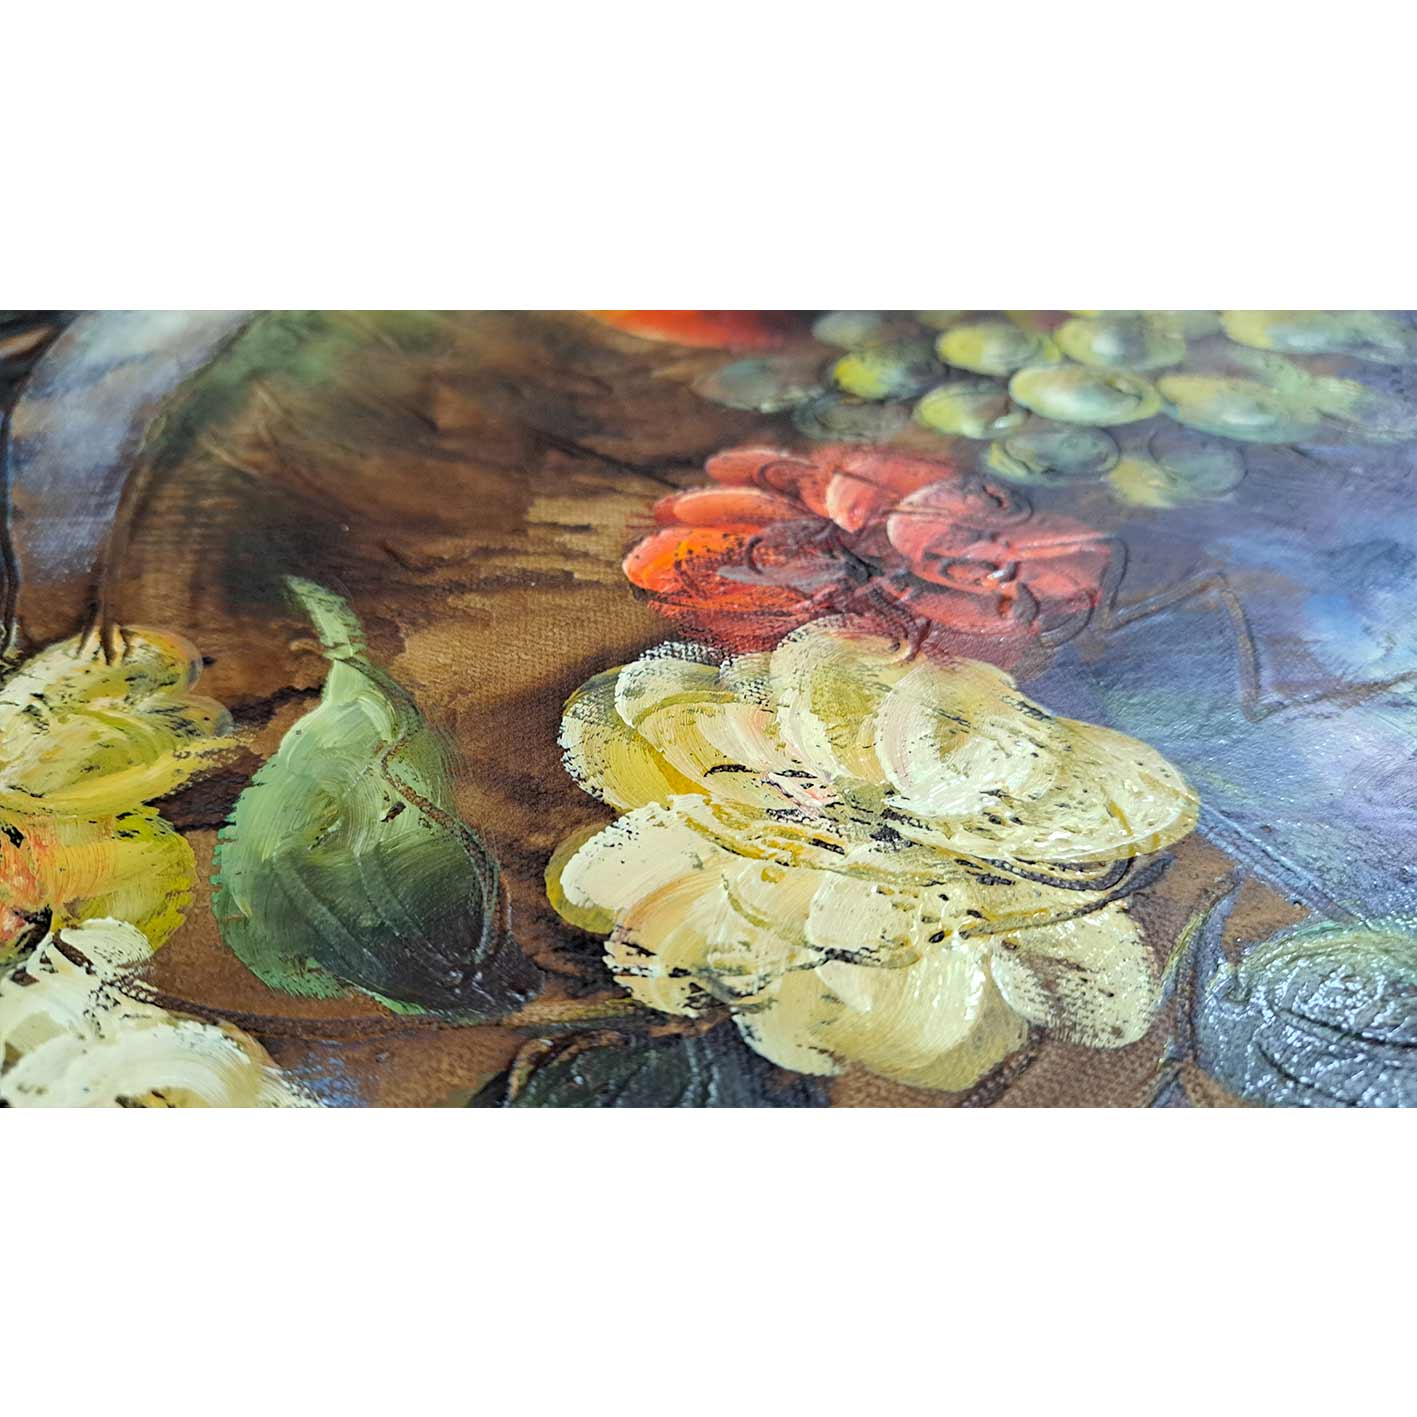 Blumenstillleben-Diptychon-Gemälde 60x50 cm [2 Stück]